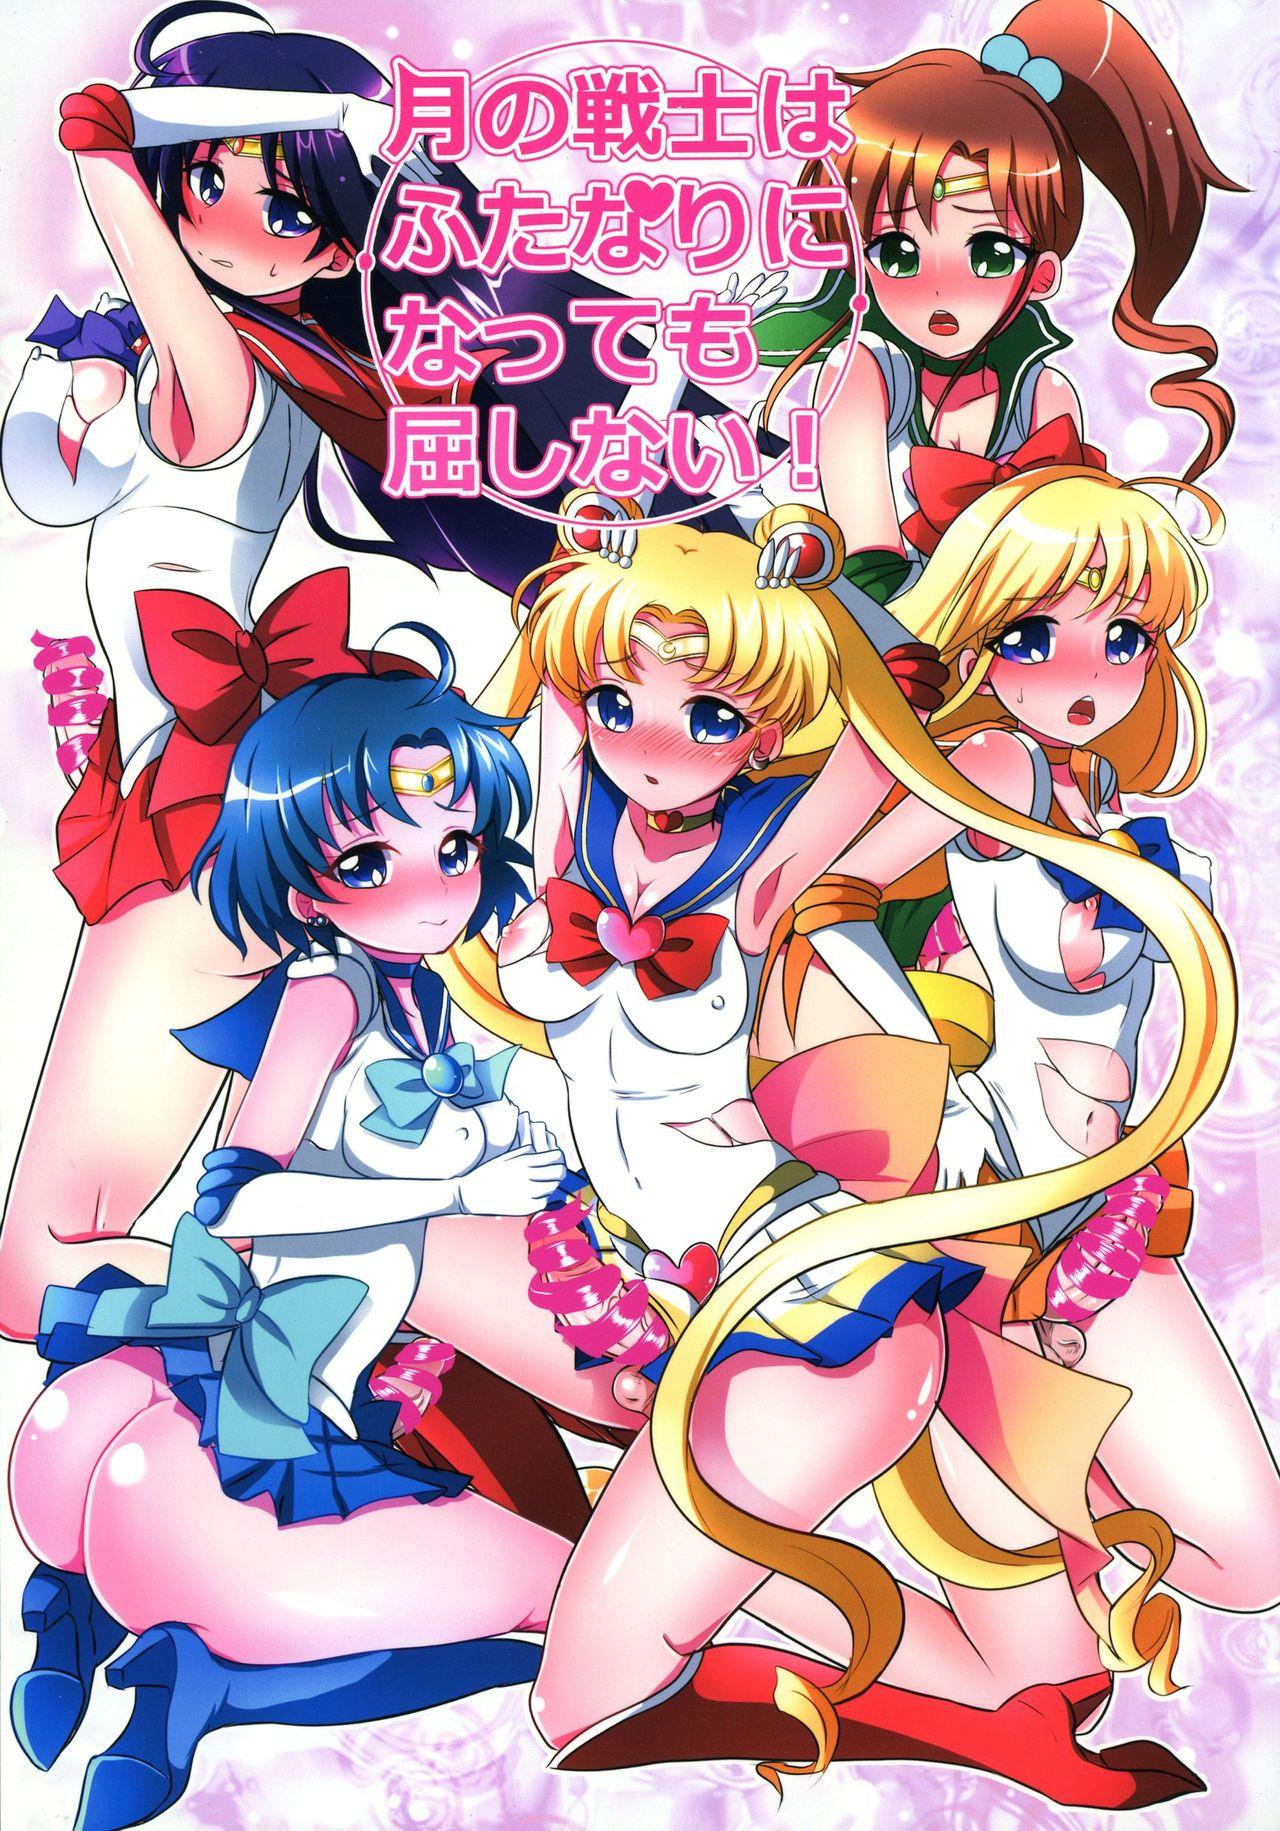 Dick Tsuki no Senshi wa Futanari ni natte mo Kusshinai! - Sailor moon Hardcore - Picture 1